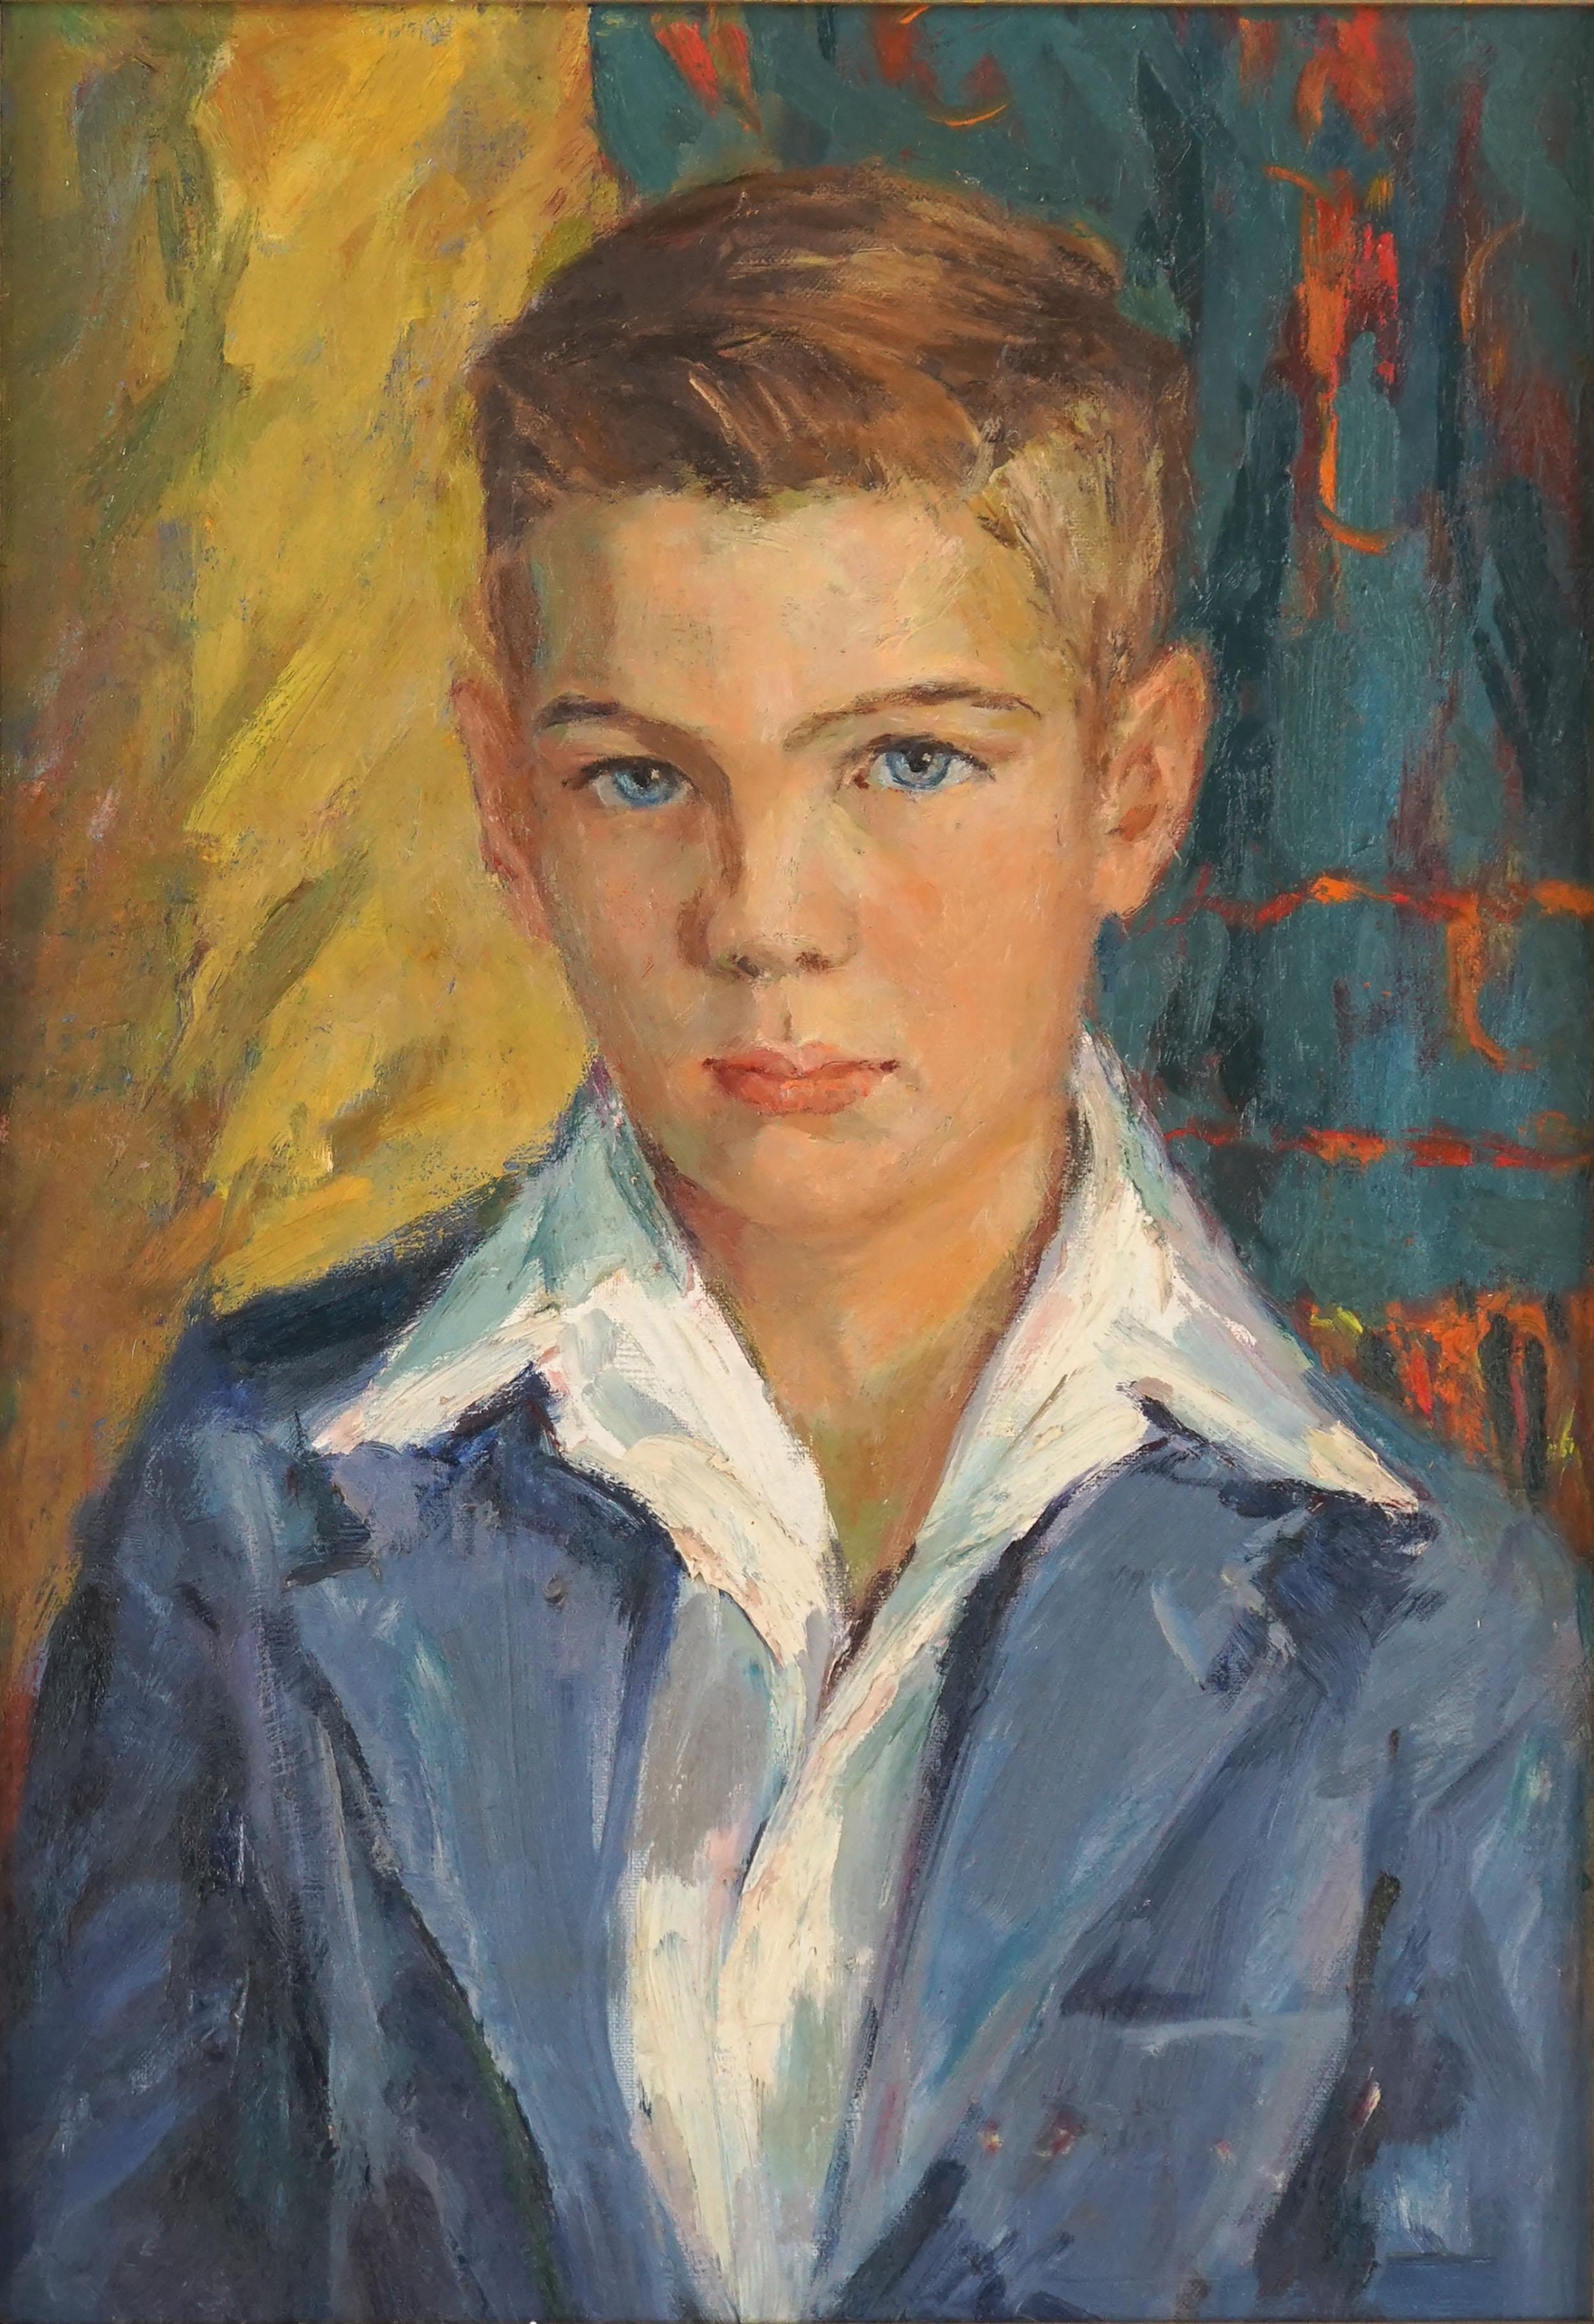 Schöner blauer Augenbrauner Junge, Vintage-Porträt, kalifornischer Impressionist – Painting von California School